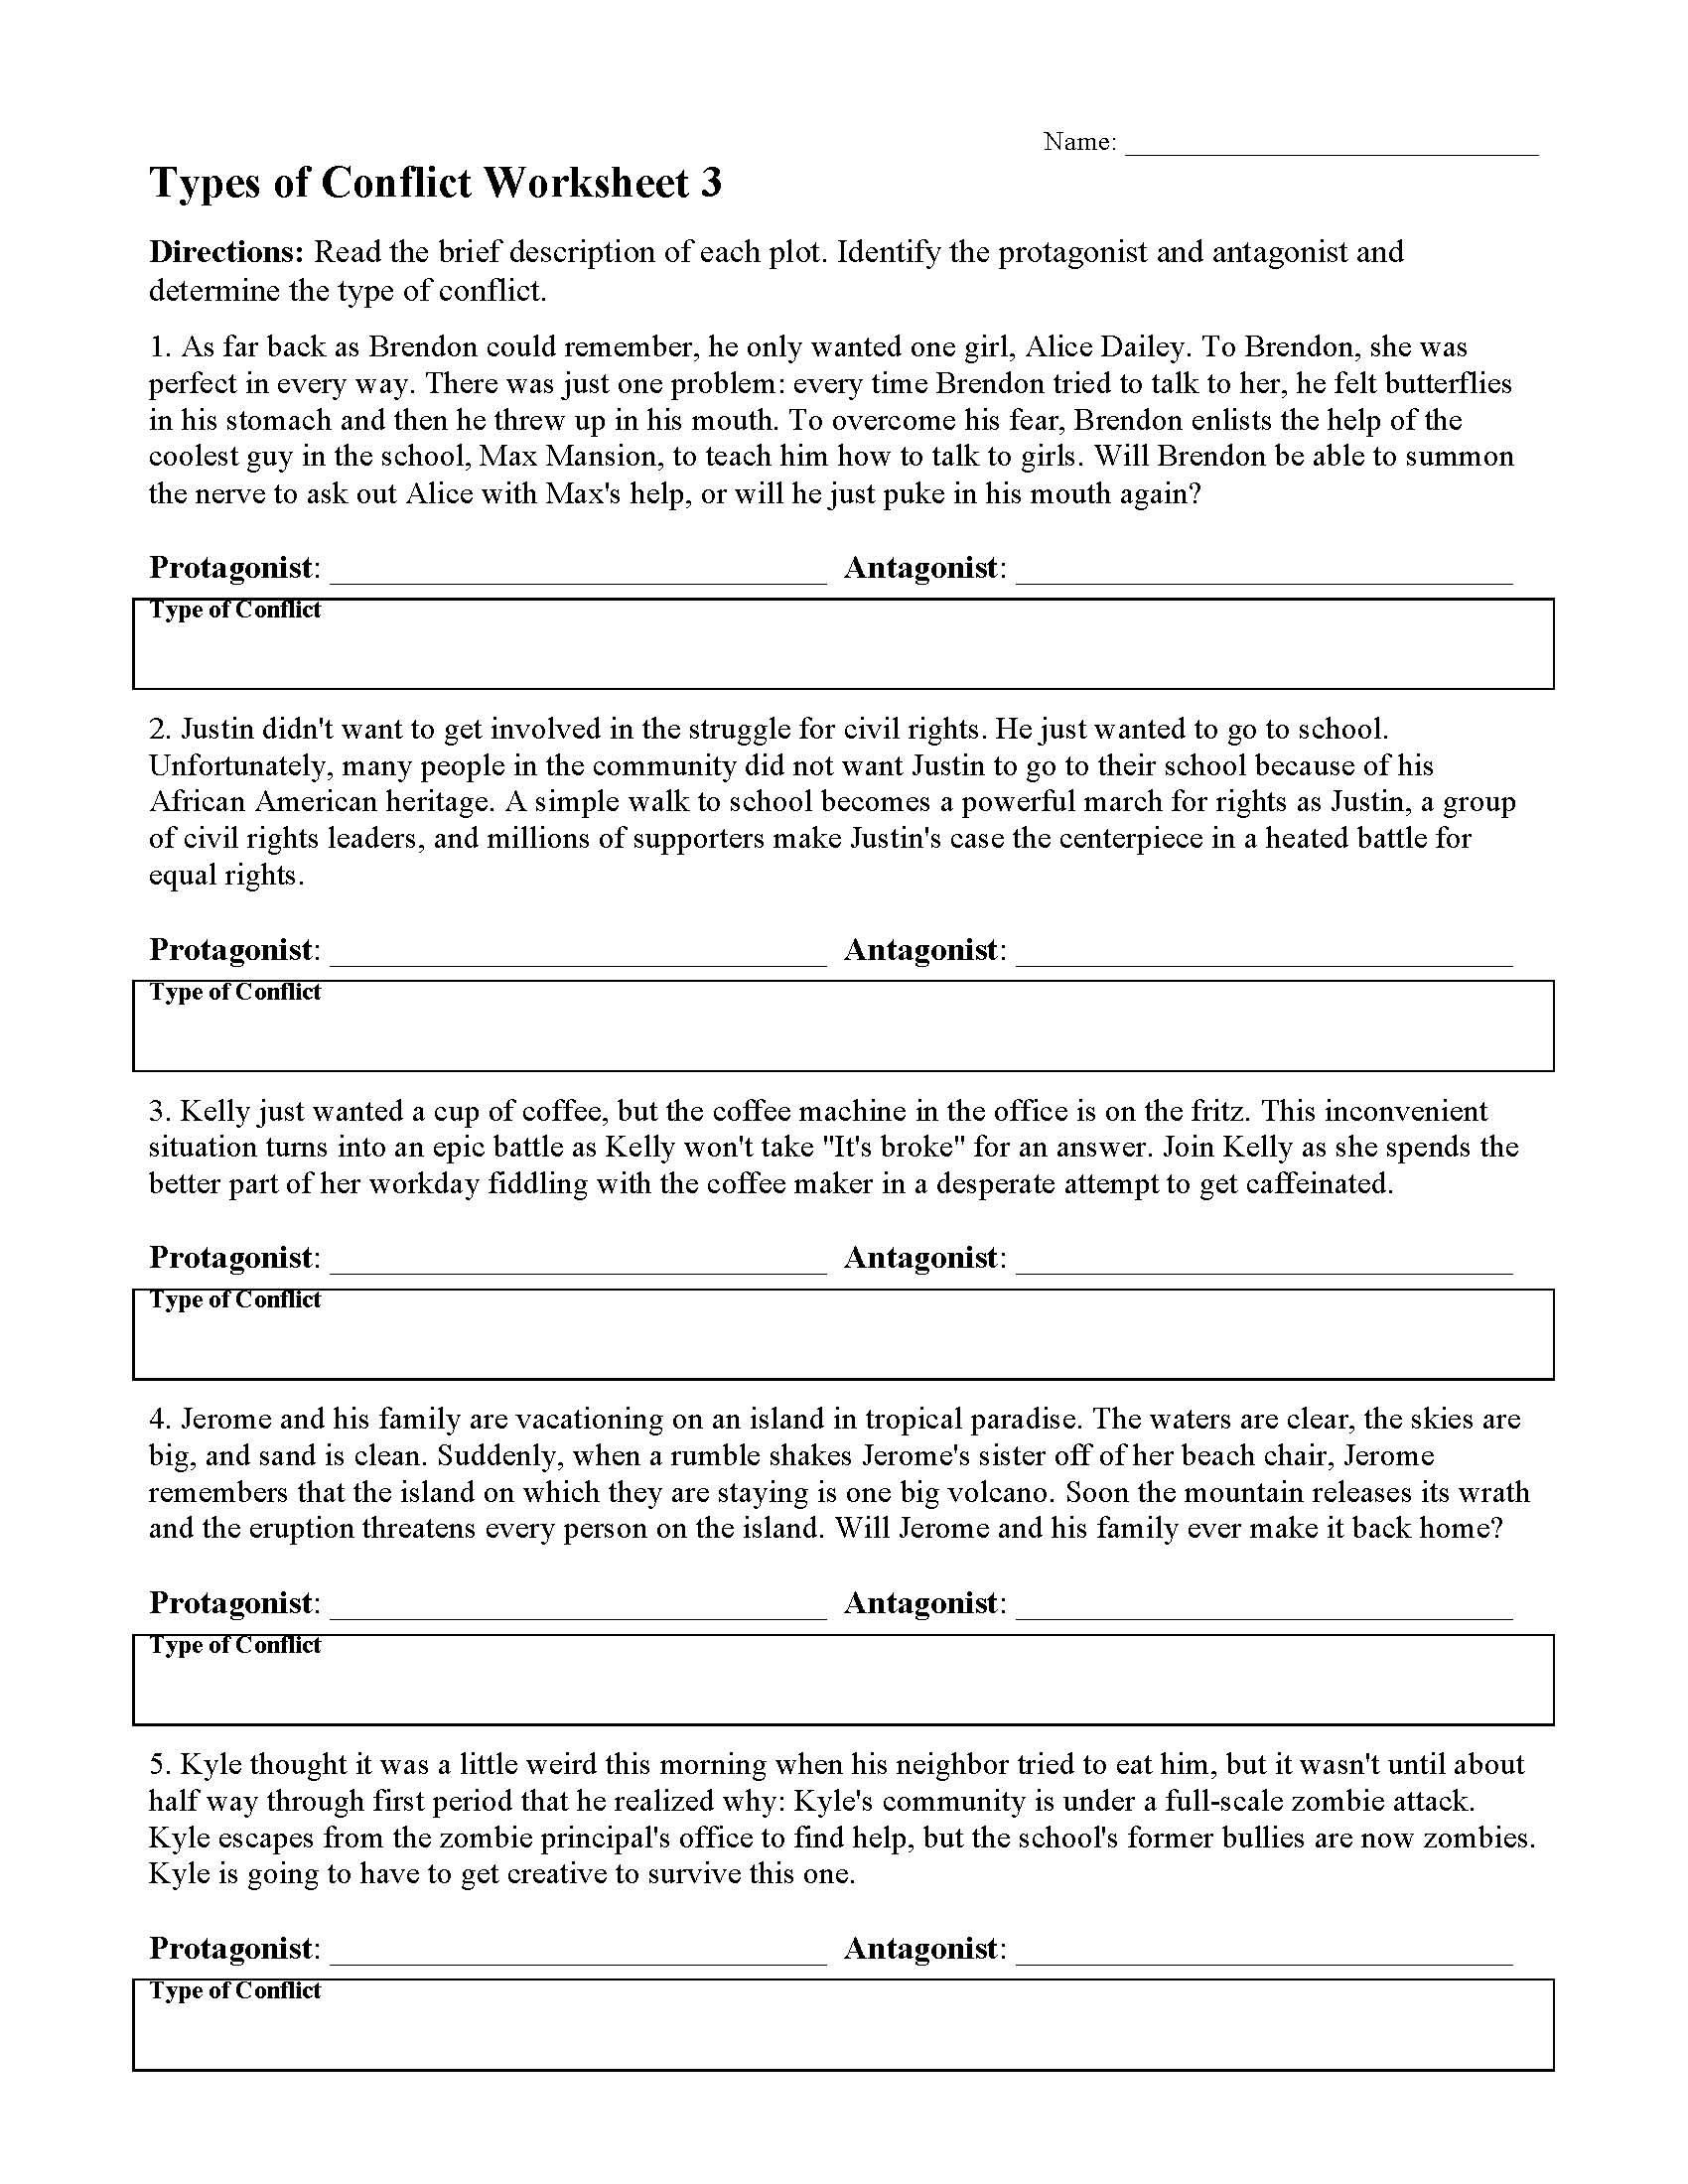 types-of-conflict-worksheet-3-answer-key-math-worksheets-kindergarten